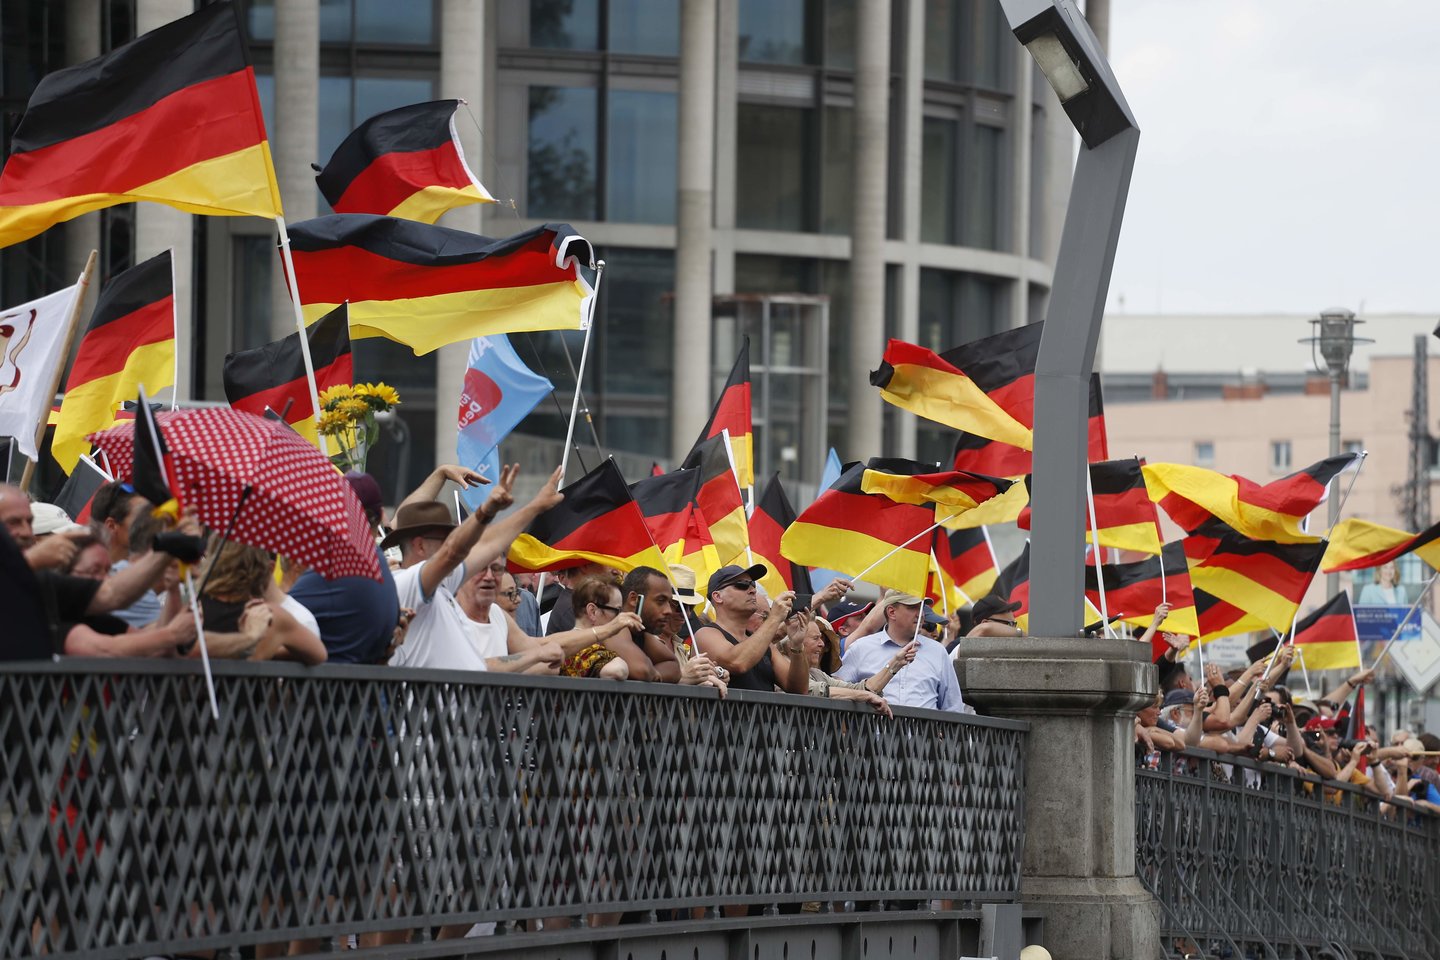  Tūkstančiai kairiųjų pažiūrų aktyvistų ir rasizmo priešininkų išėjo į Berlyno gatves, kad pasipriešintų Vokietijos kraštutinių dešiniųjų partijos „Alternatyva Vokietijai“ (AfD) rengiamoms eitynėms prieš pabėgėlių antplūdį, sekmadienį pranešė vokiečių žiniasklaida.<br> AFP/Scanpix nuotr.